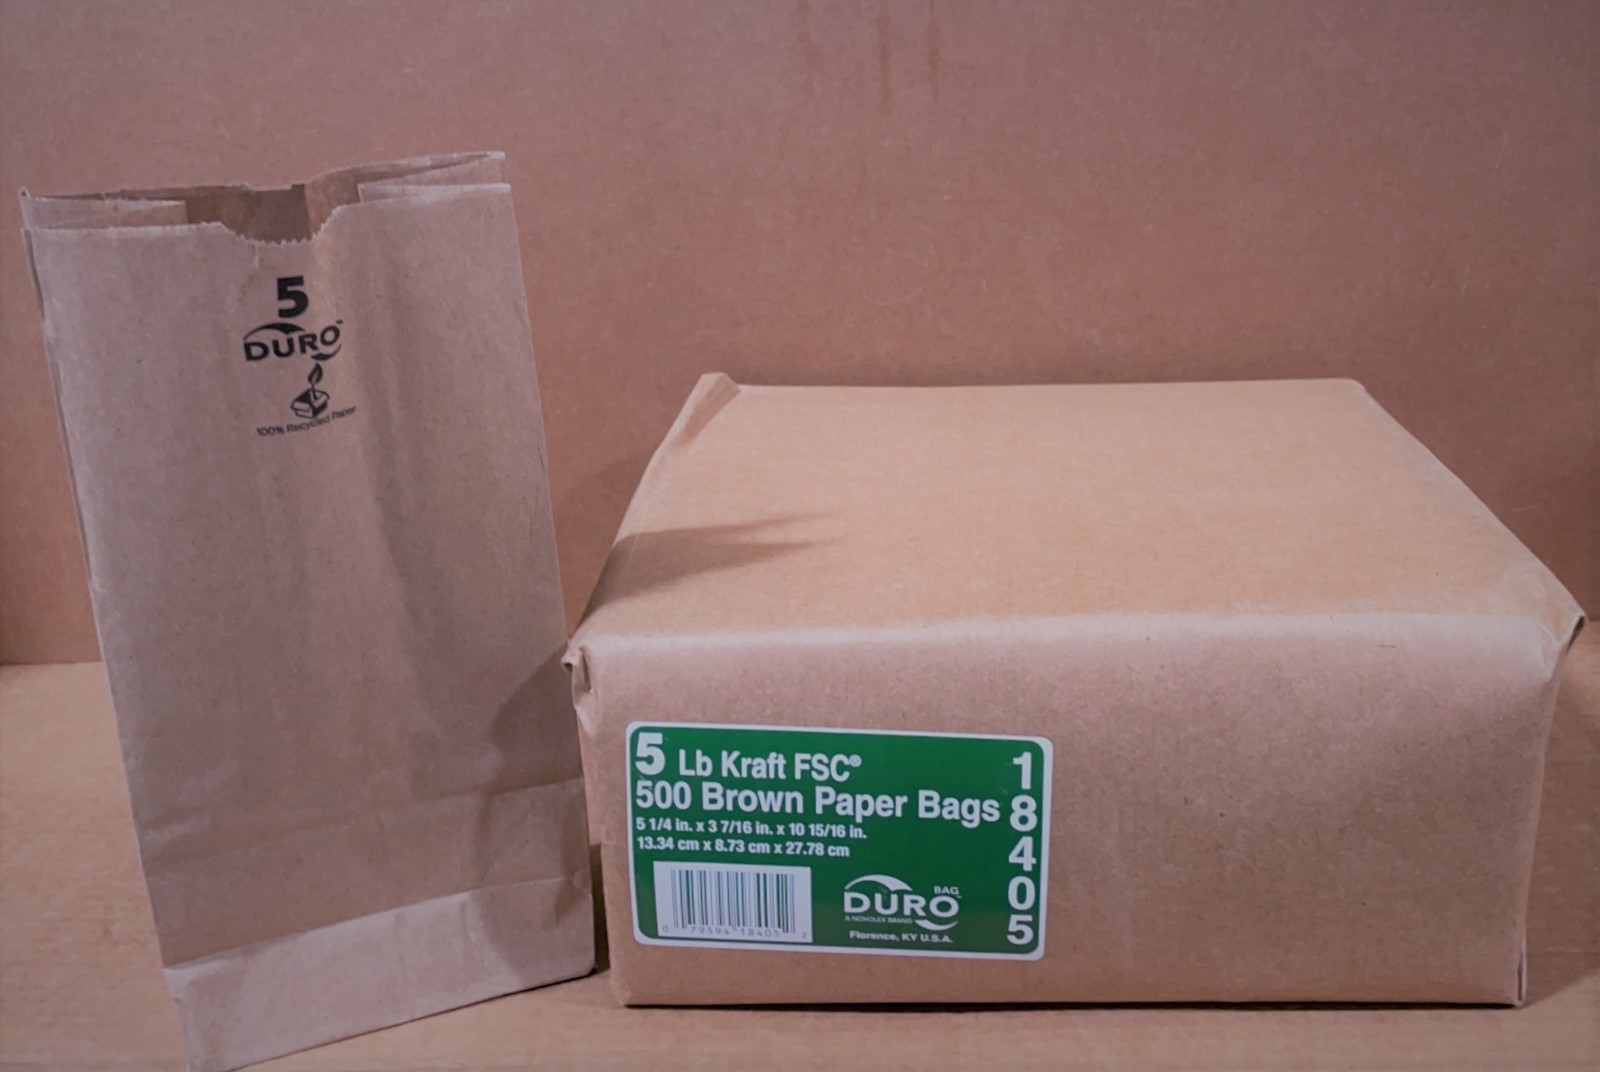 Duro - 500 Brown Paper Bags, 5 Lb Kraft